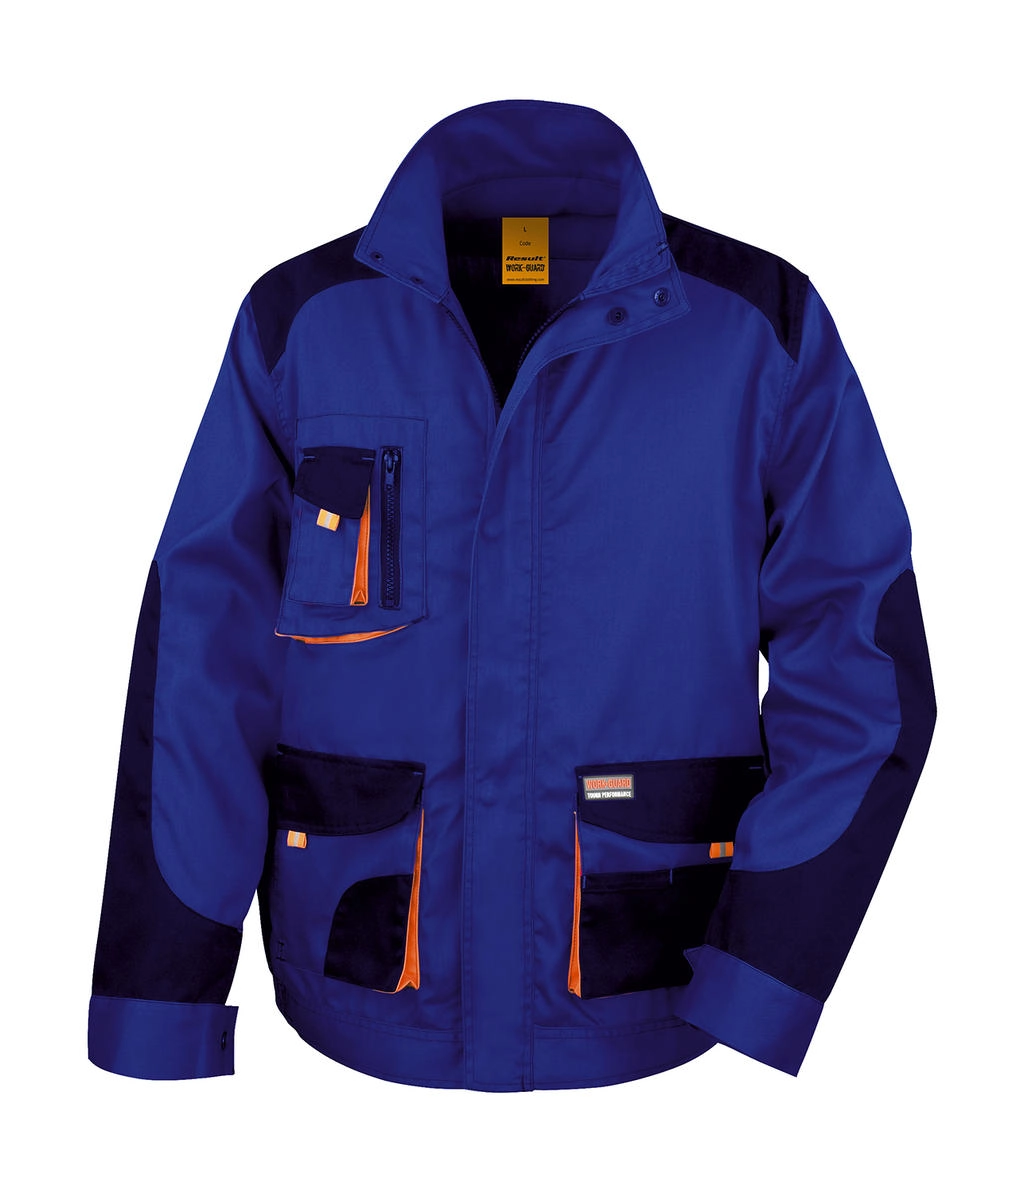 LITE Jacket zum Besticken und Bedrucken in der Farbe Royal/Navy/Orange mit Ihren Logo, Schriftzug oder Motiv.